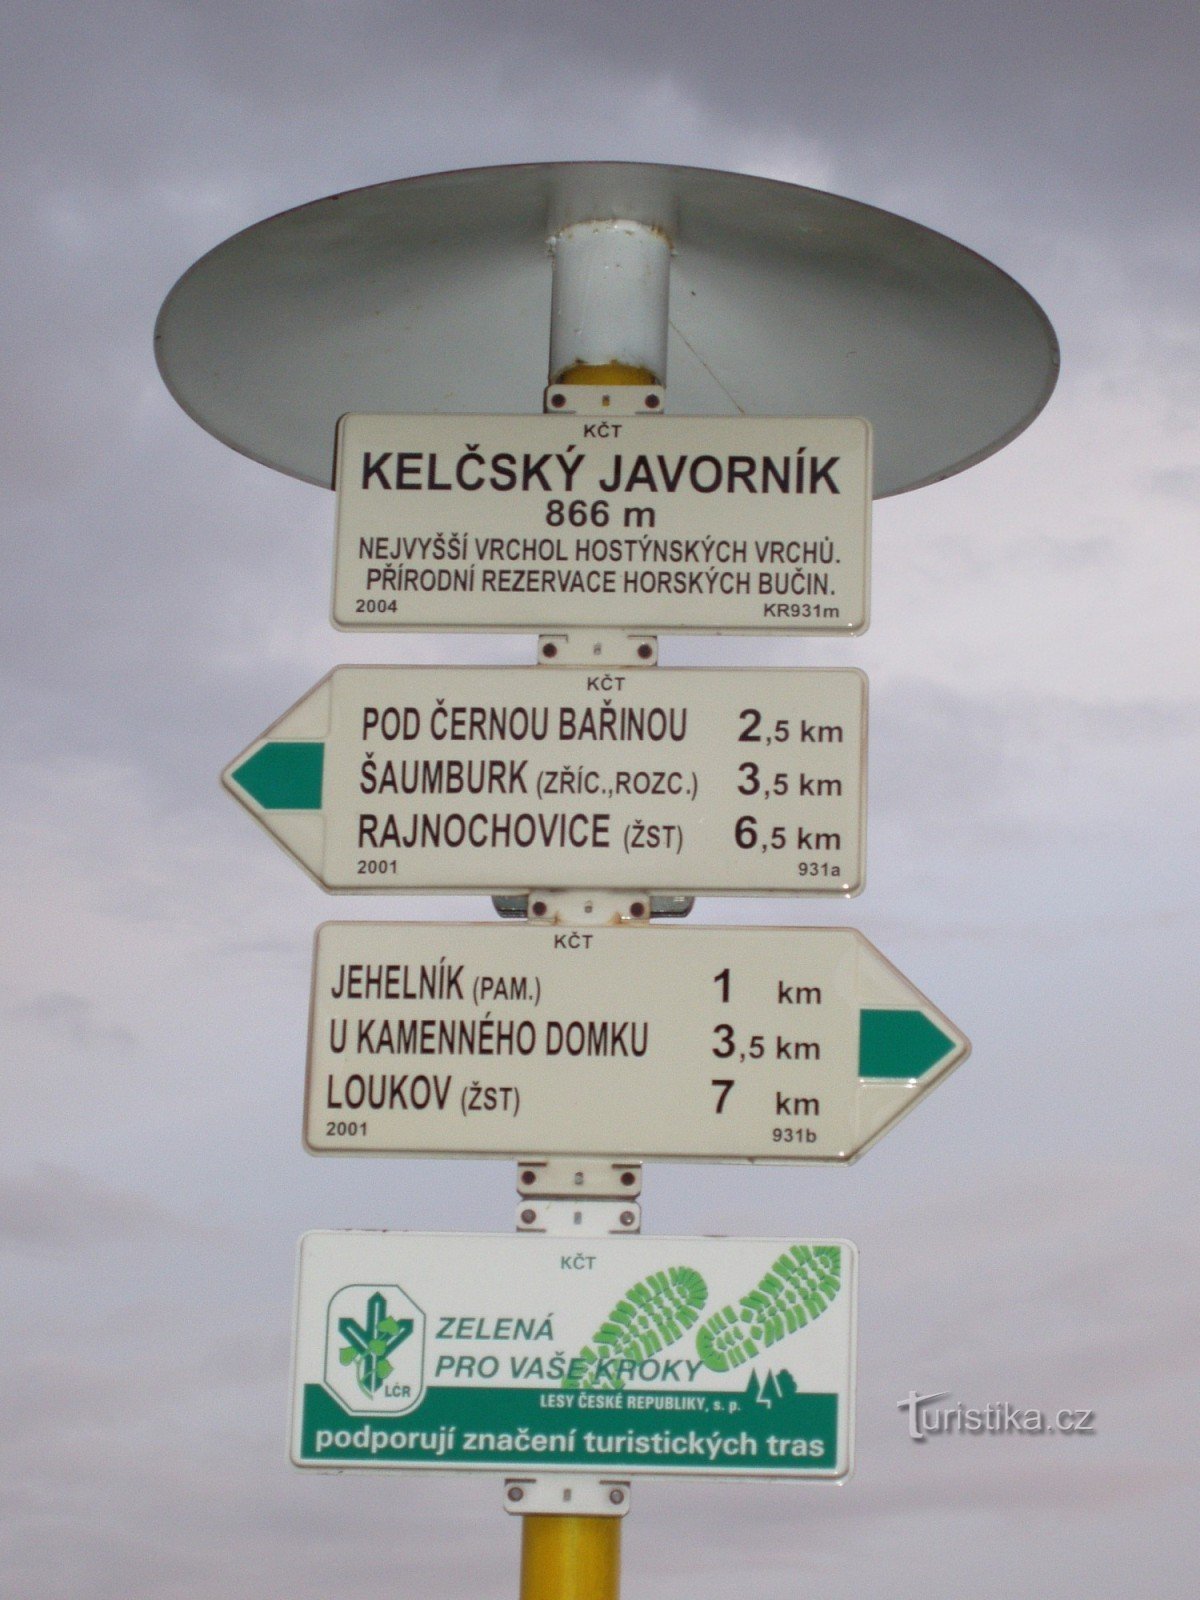 Chvalčovtól a Kelčský Javorník természetvédelmi területig